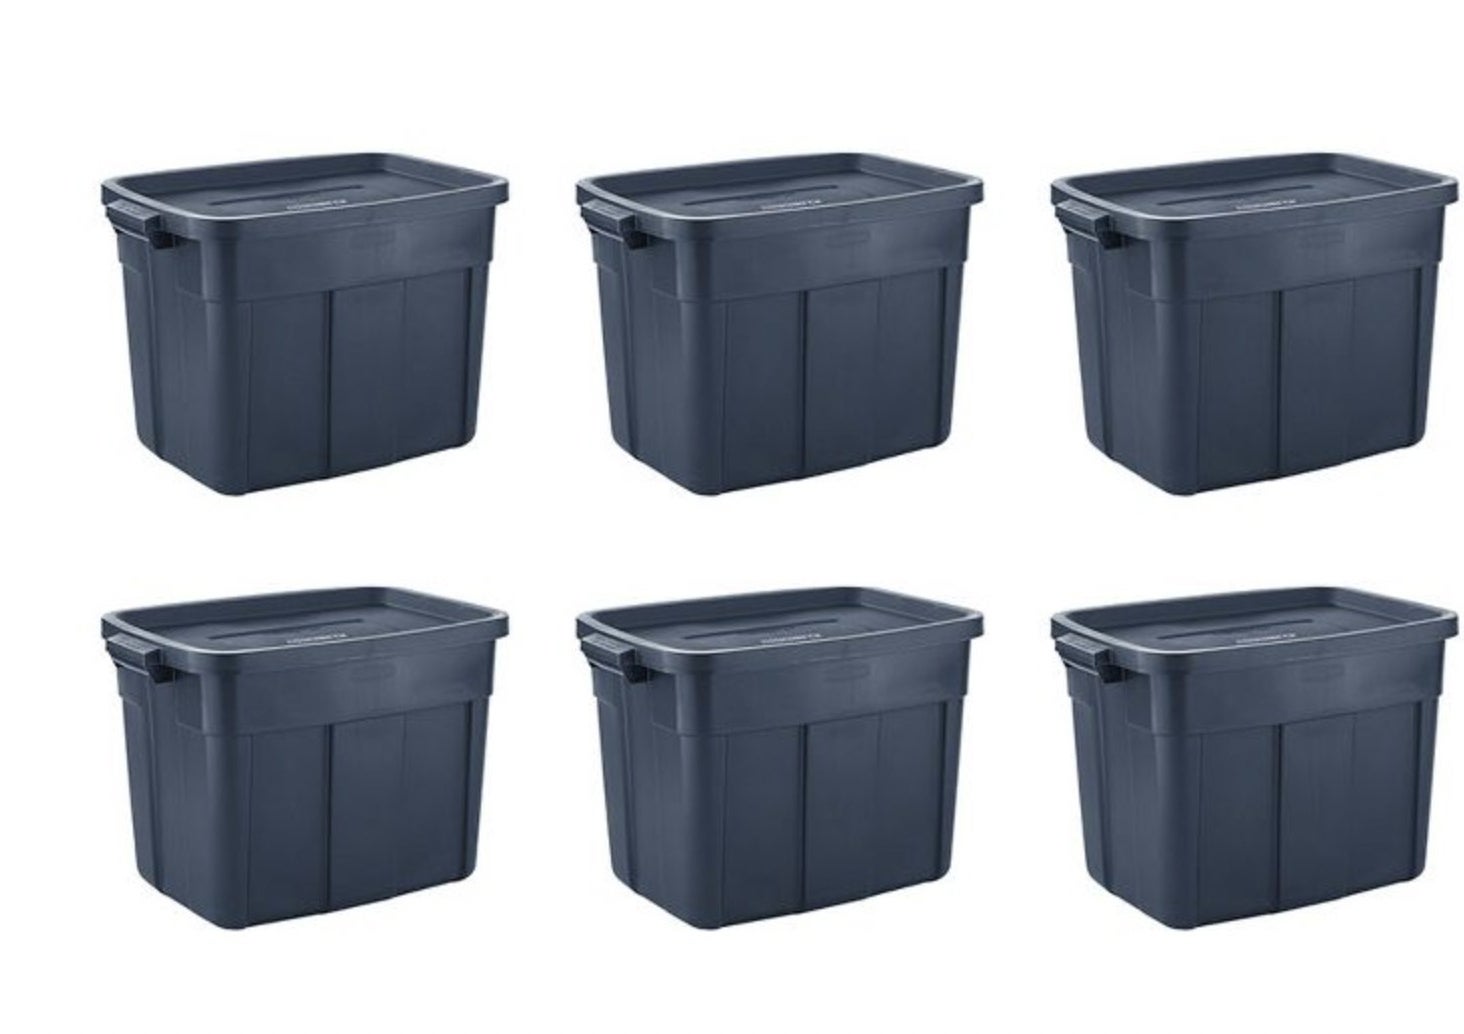 The six storage bins